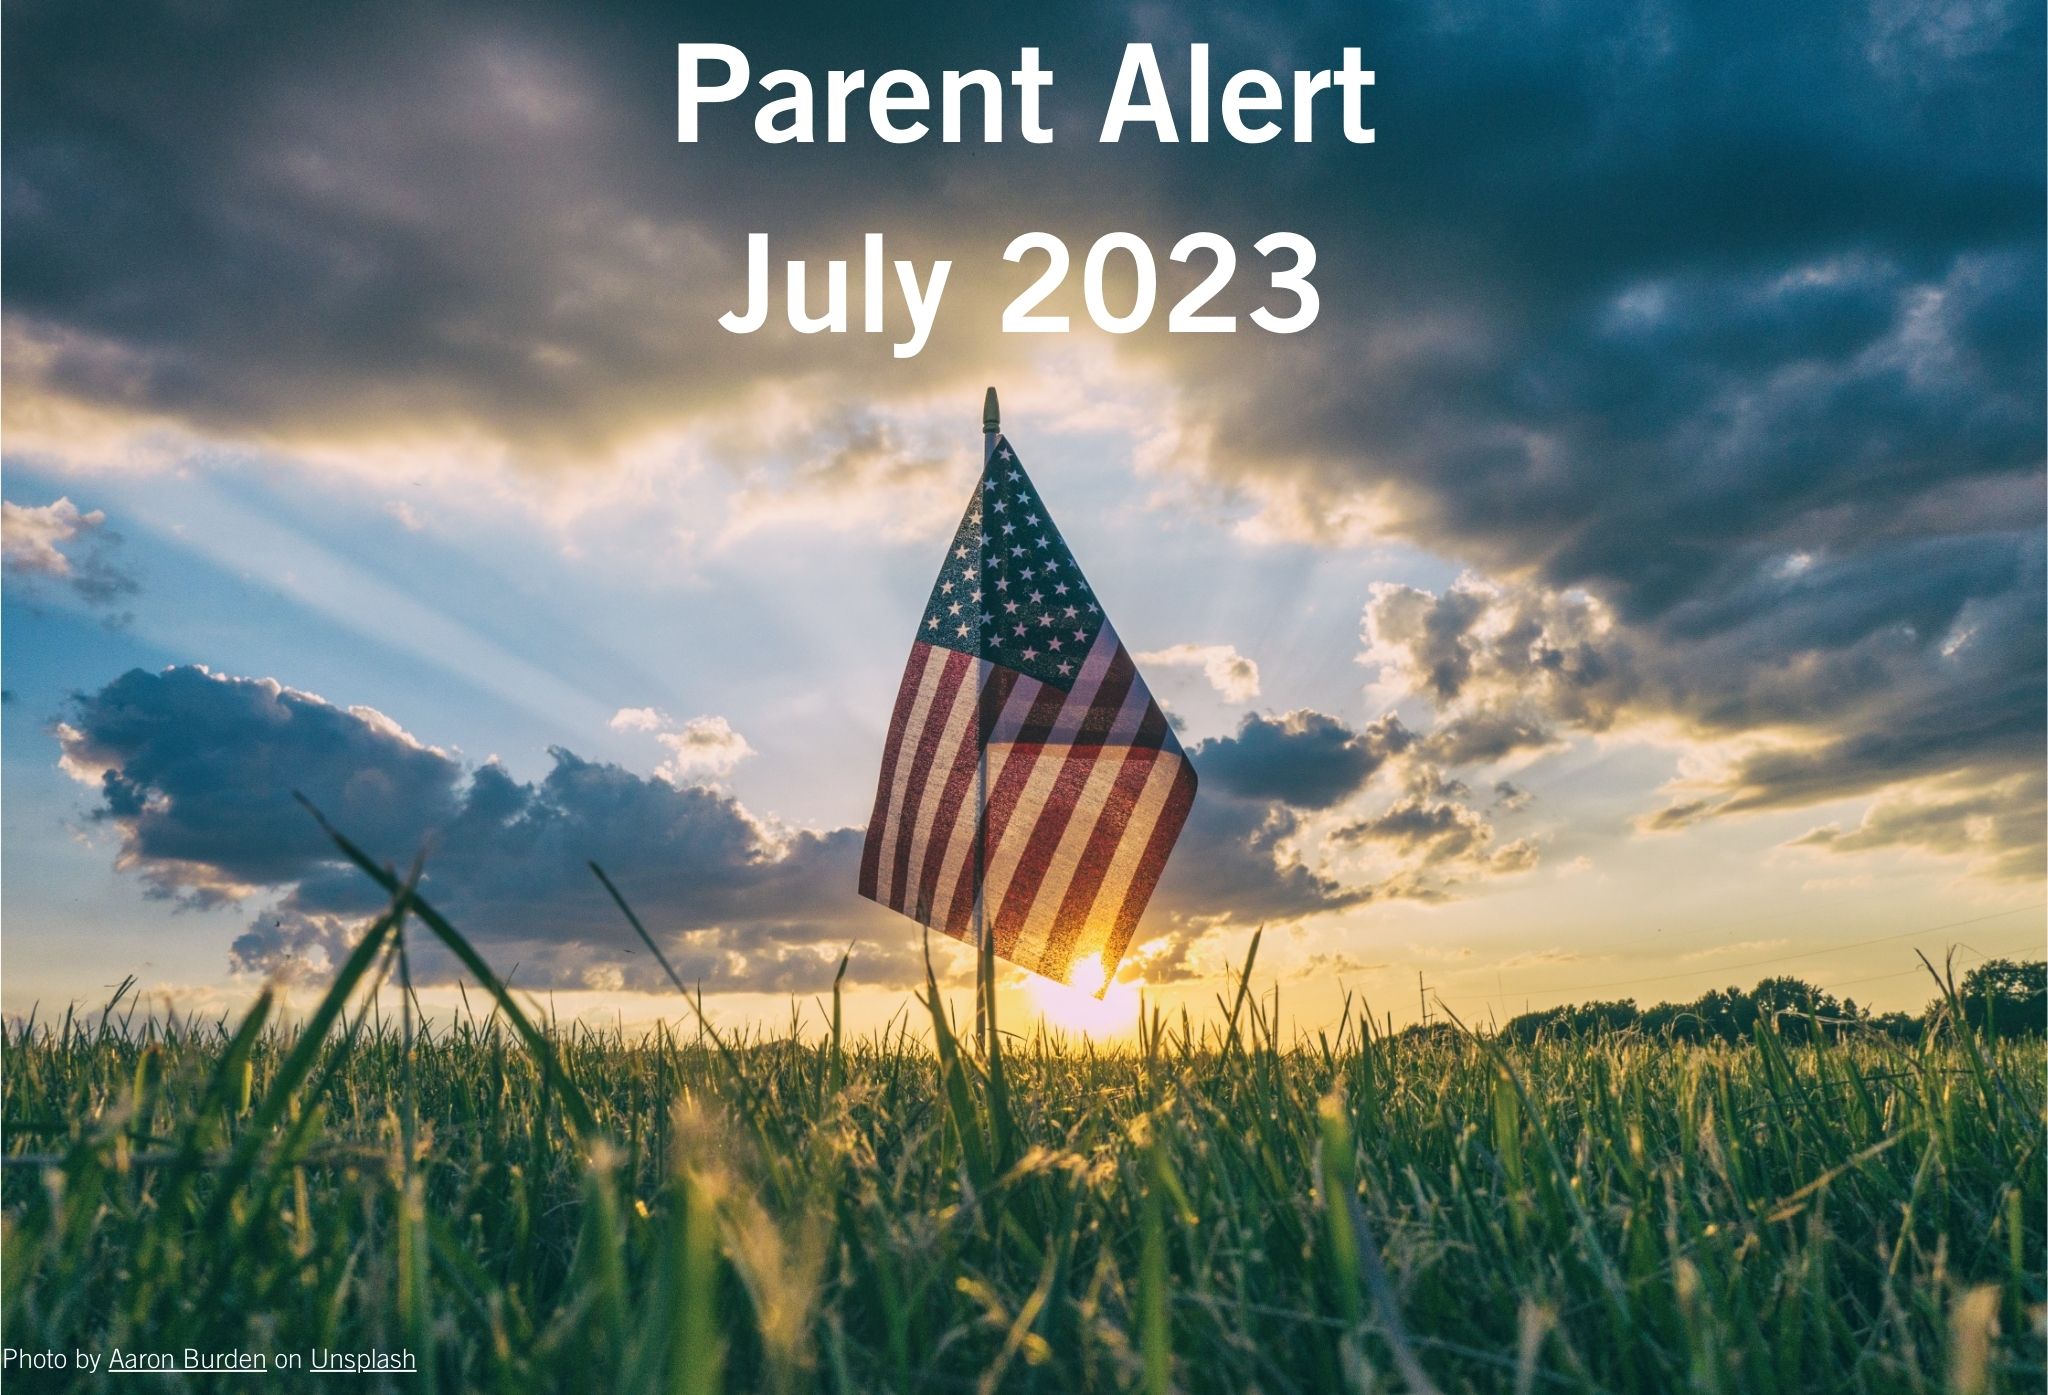 Parent Alert July 2023 Background Image